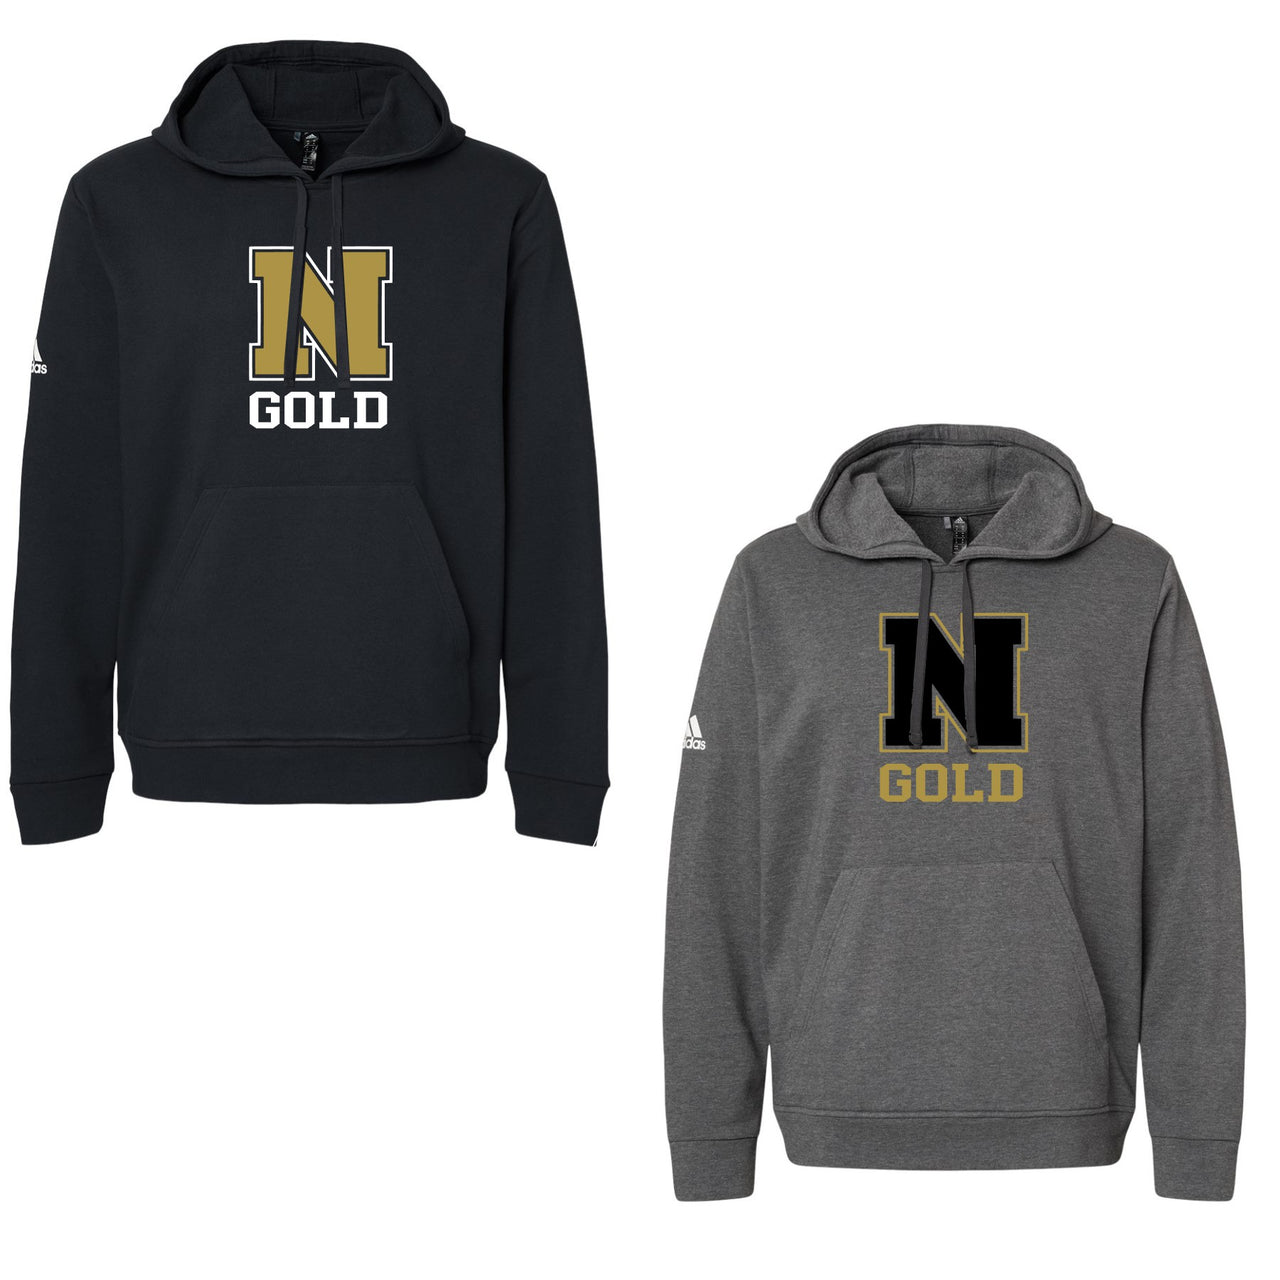 Adult - Adidas Fleece Hooded Sweatshirt - (Nebraska Gold)